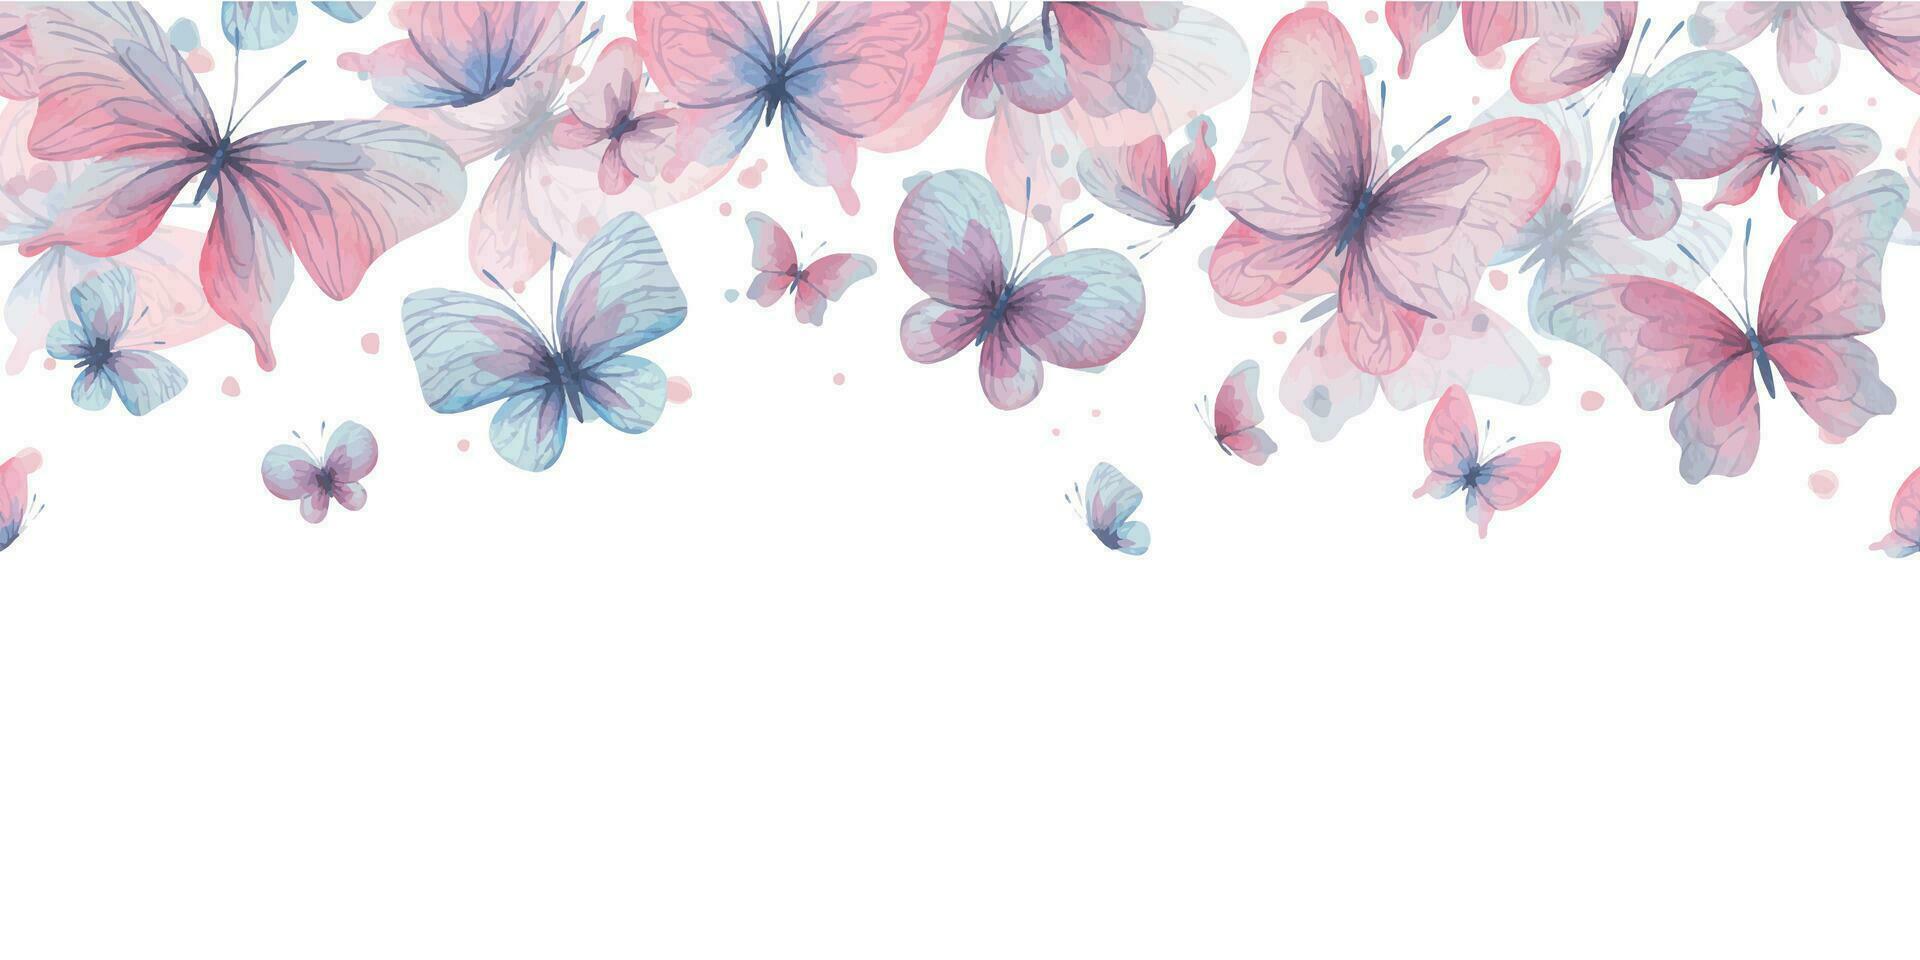 fjärilar är rosa, blå, lila, flygande, delikat med vingar och stänk av måla. hand dragen vattenfärg illustration. ram, mall, krans på en vit bakgrund, för design vektor